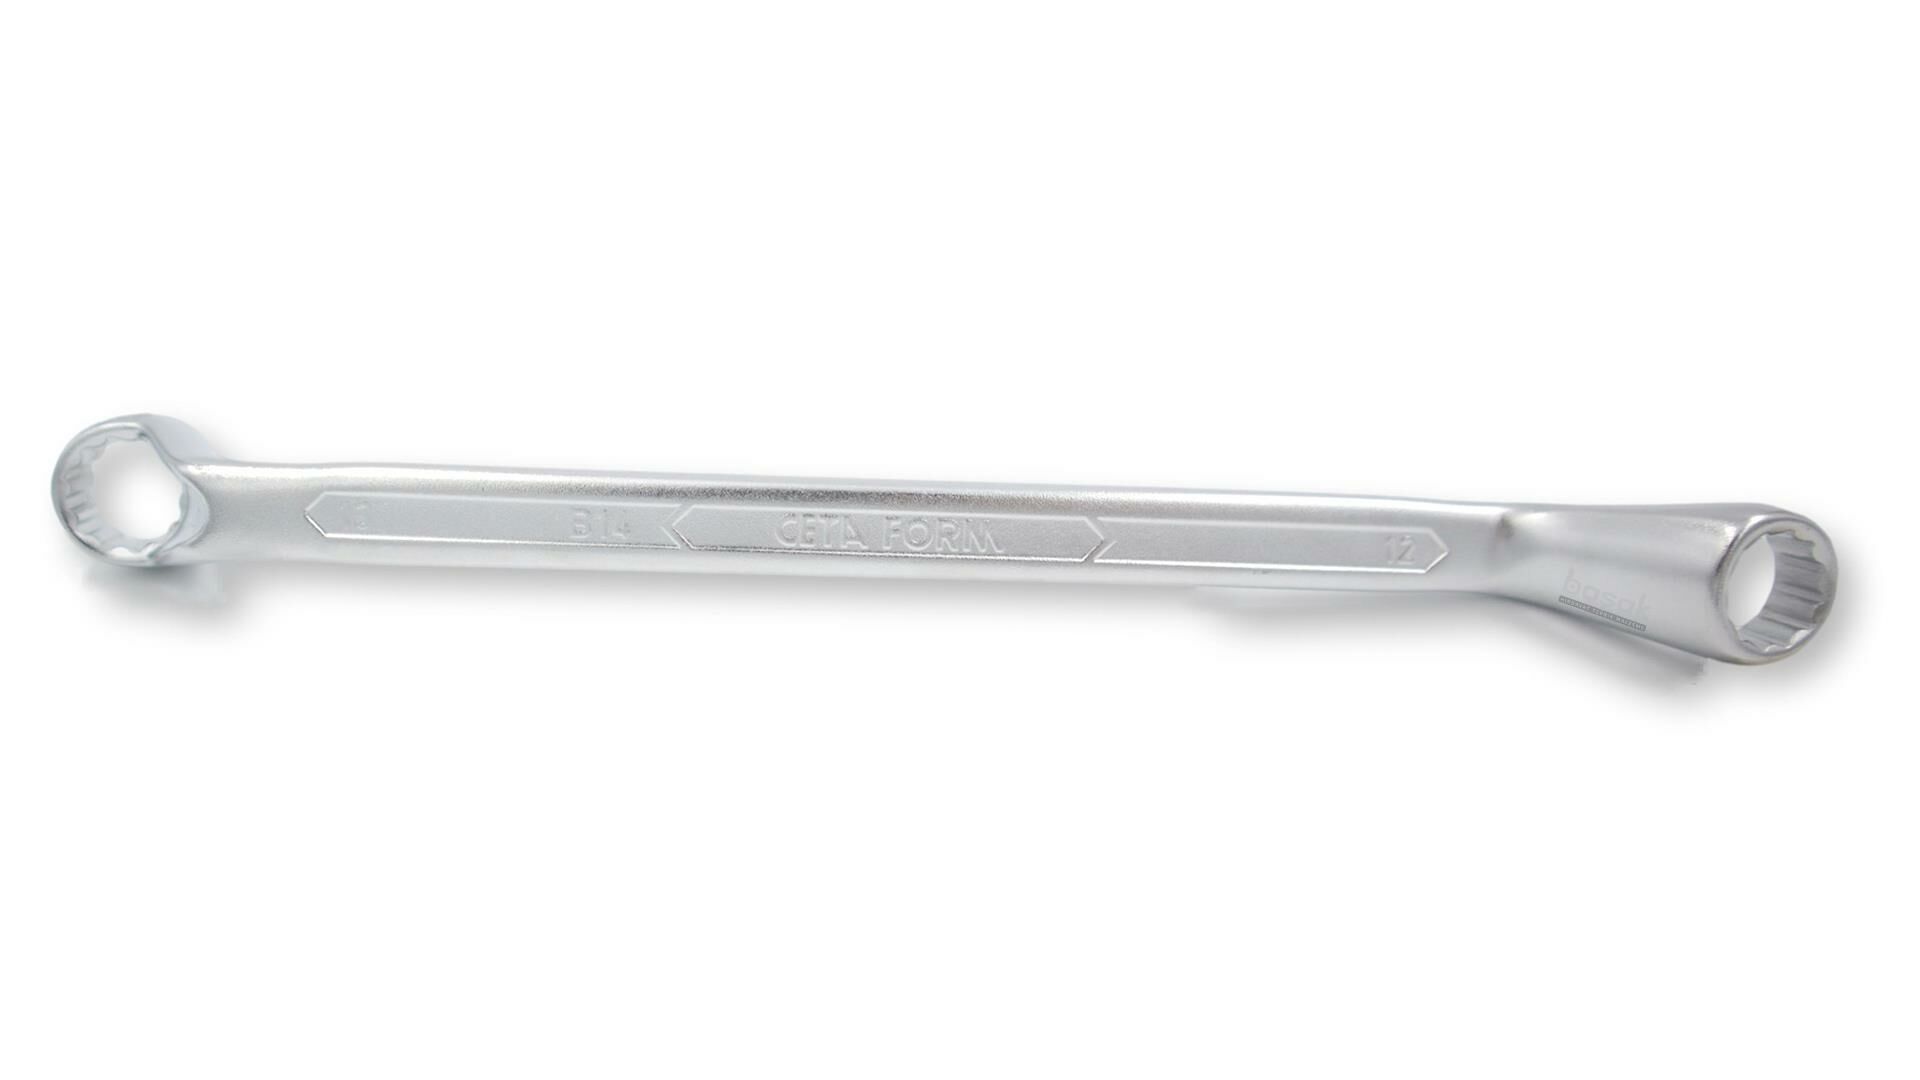 Ceta Form 12 x 13 mm Yıldız Anahtar B14-1213